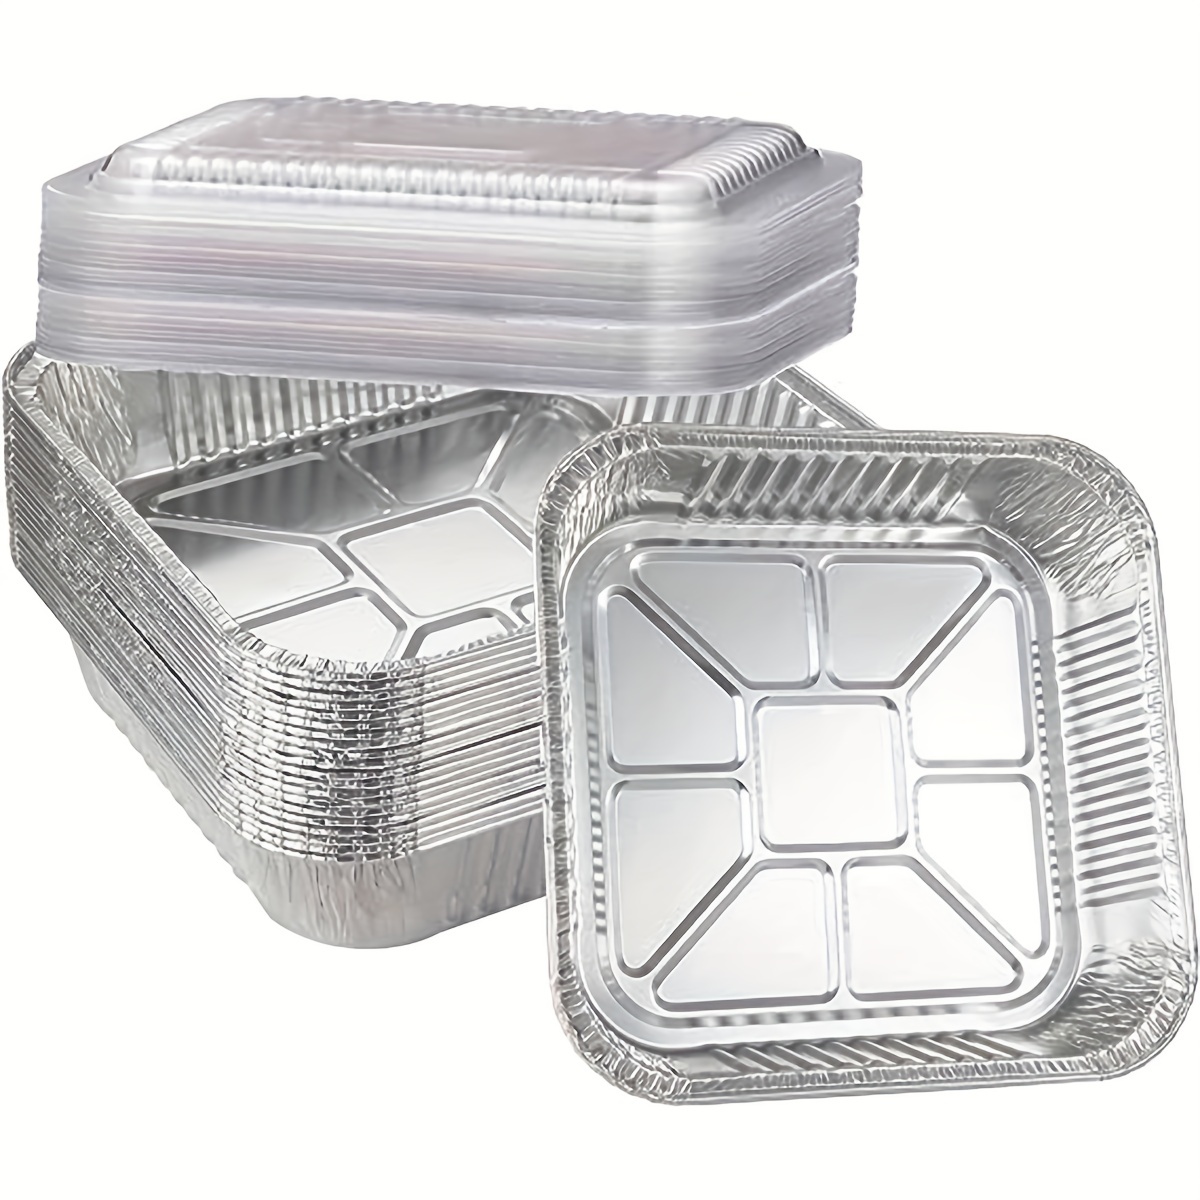  Commercial Bandeja de aluminio para hornear, 1/8 hoja, 10  x 7 pulgadas, paquete de 6 : Hogar y Cocina